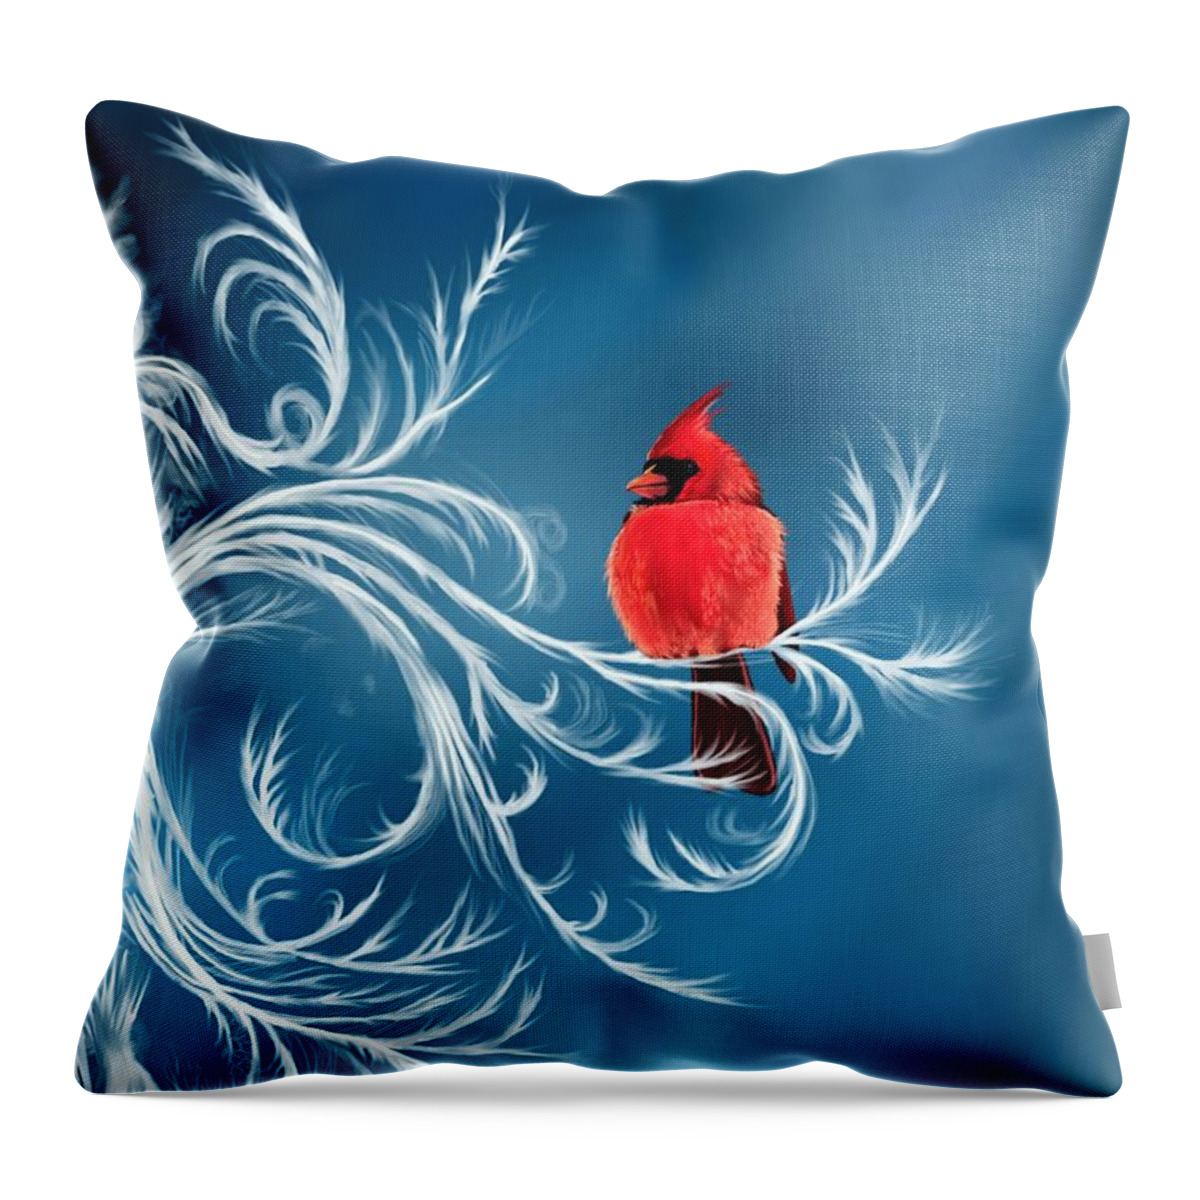 Bird Throw Pillow featuring the digital art Winter Cardinal by Norman Klein